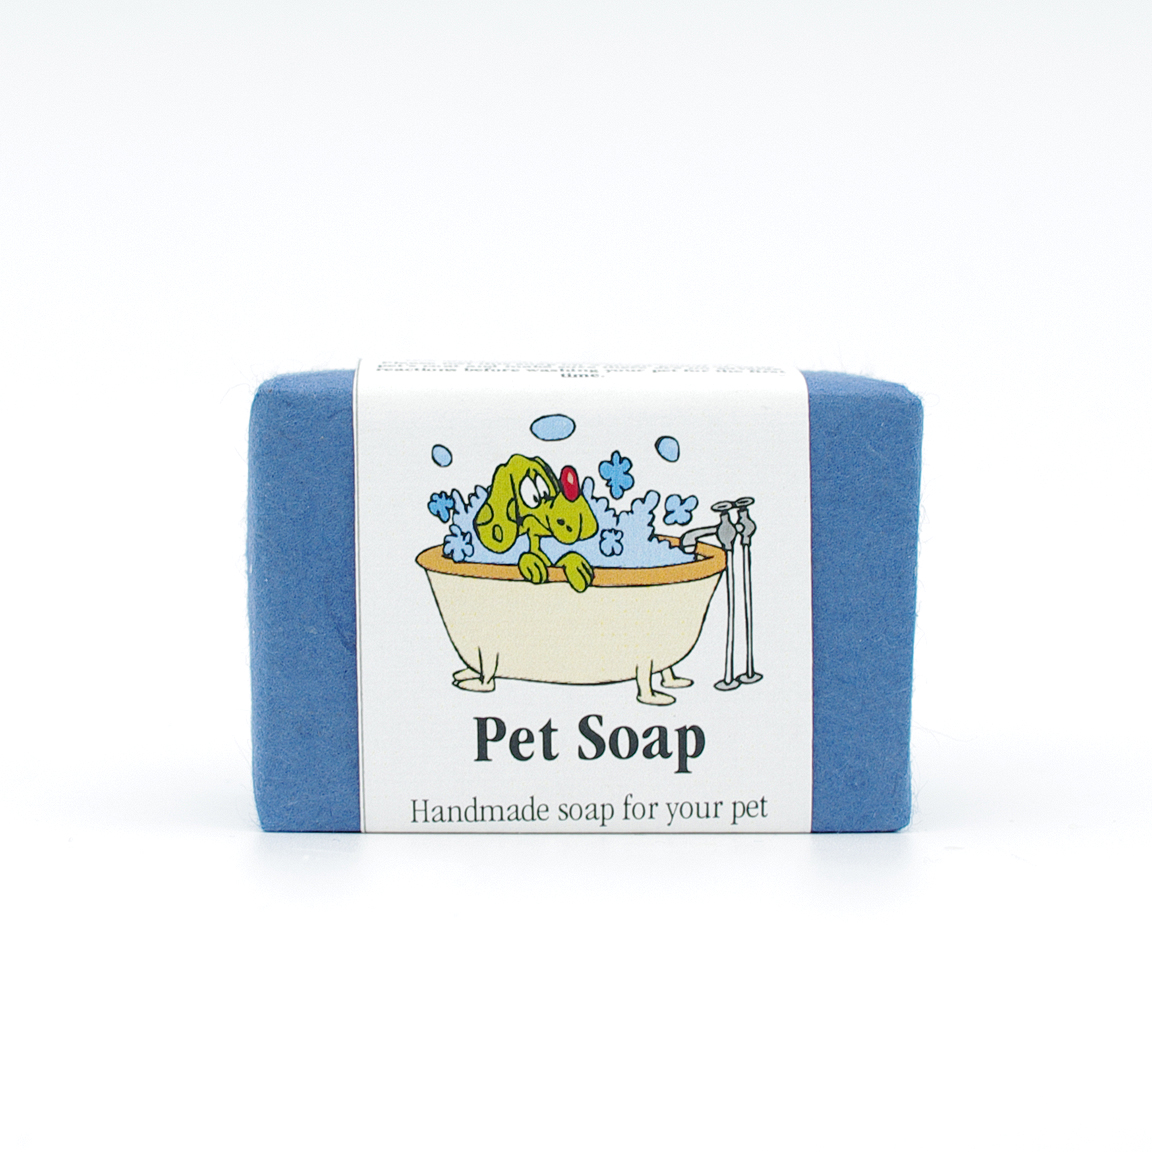 Pet guest soap, approx 50g